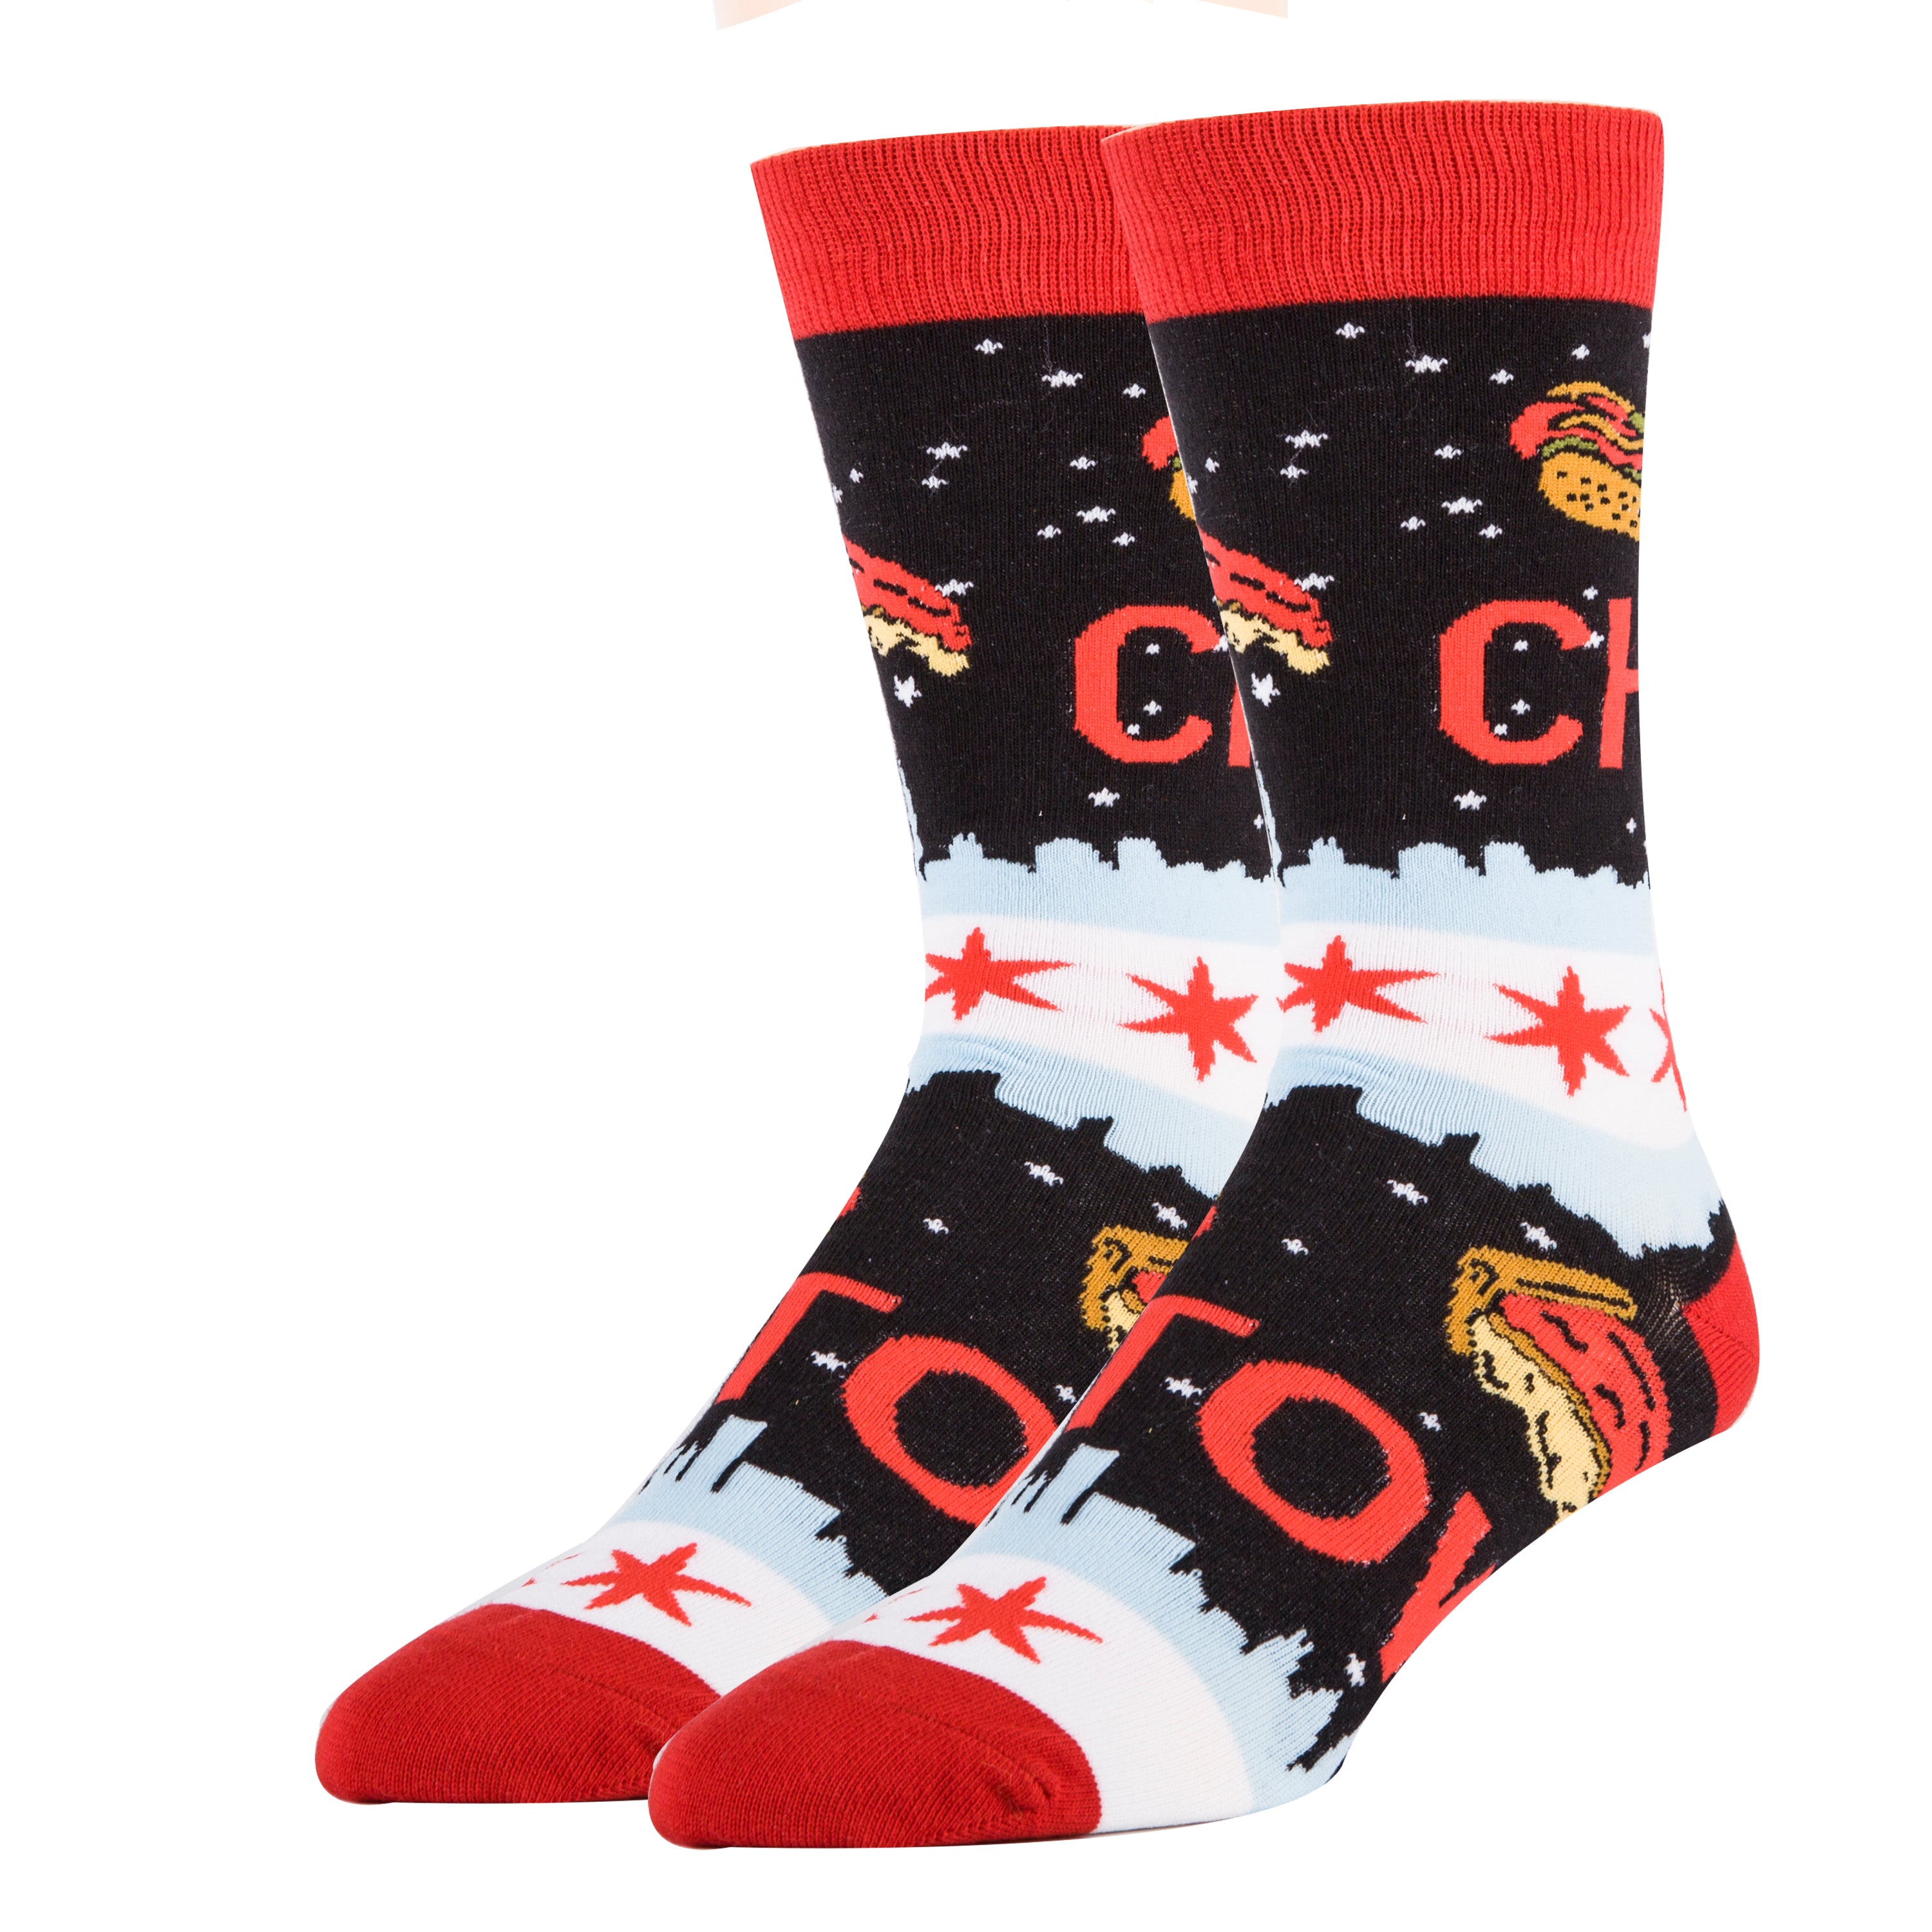 CHI Town Socks | Novelty Crew Socks For Men